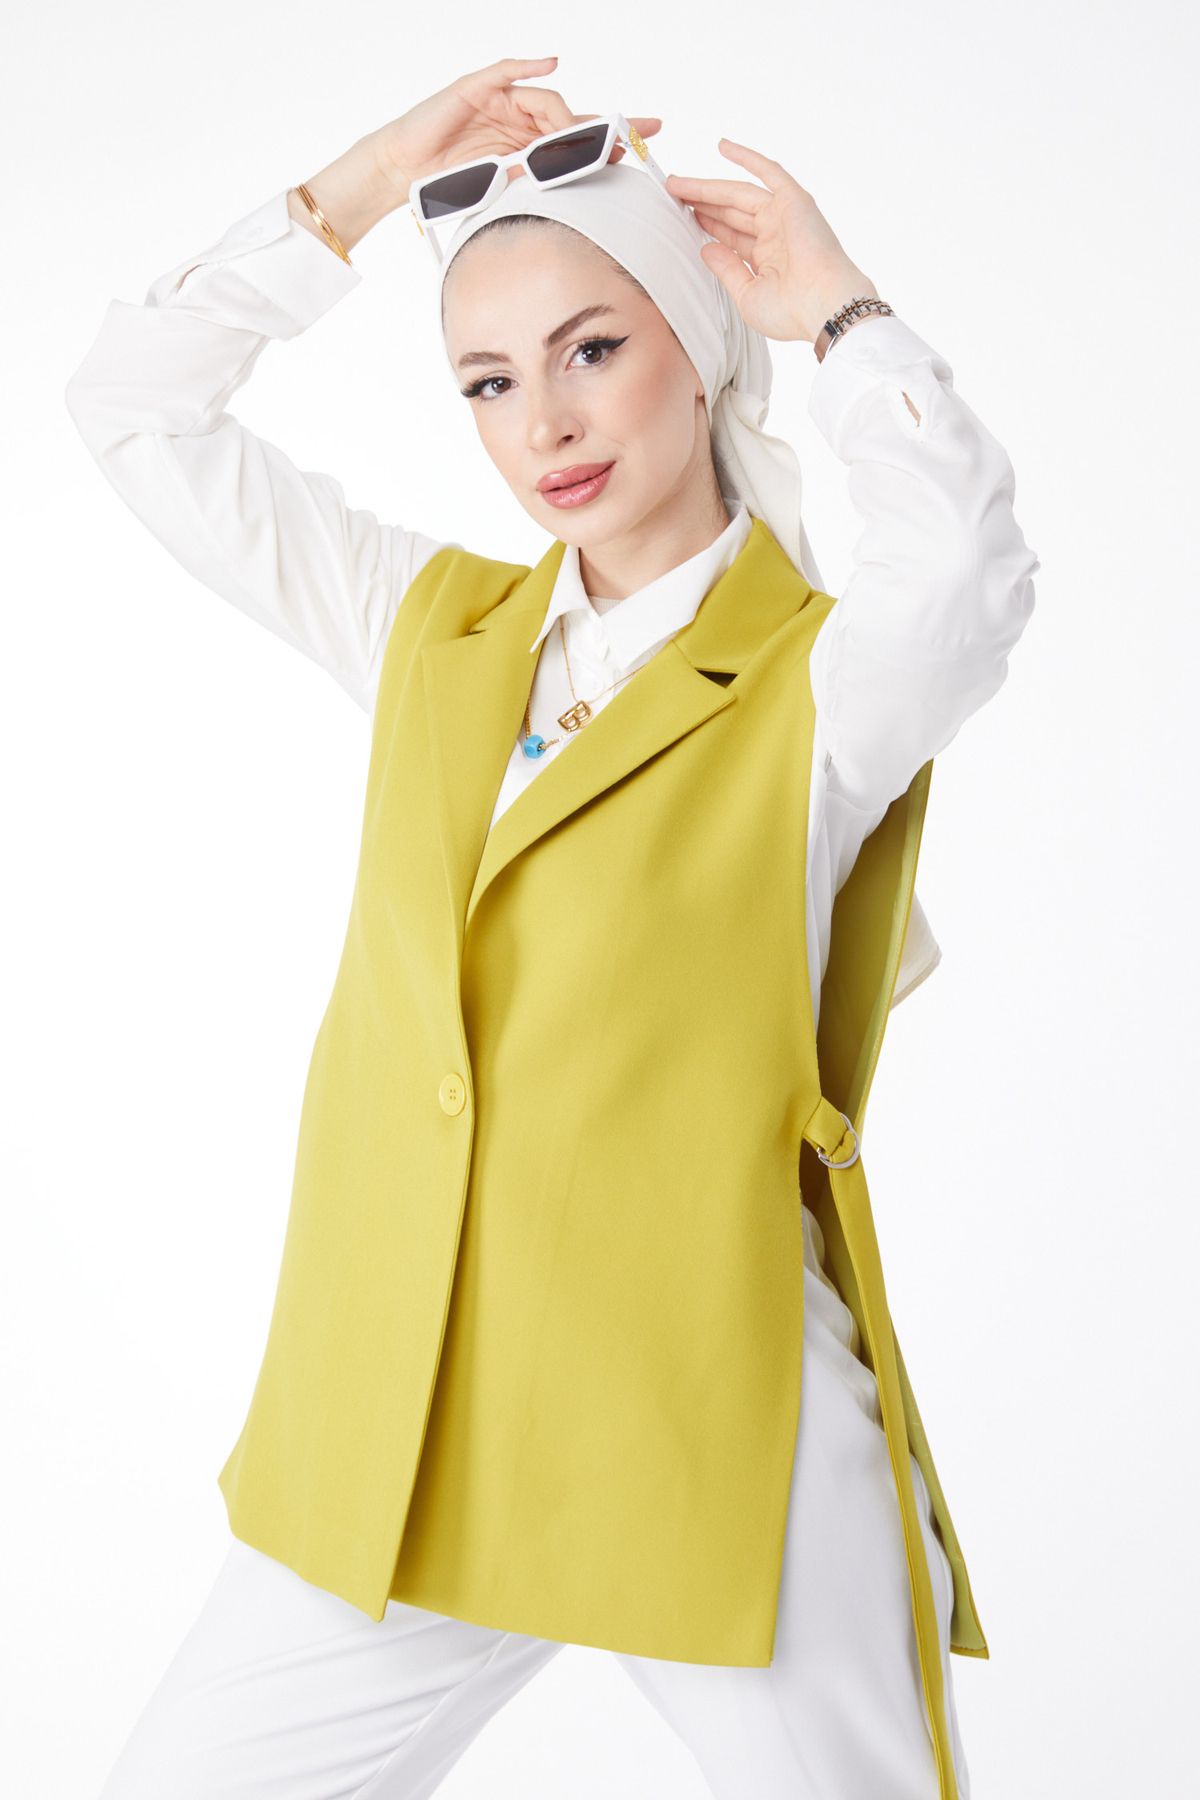 TOFİSA Düz Ceket Yaka Kadın Yeşil Sıfır Kol Blazer Ceket - 25033